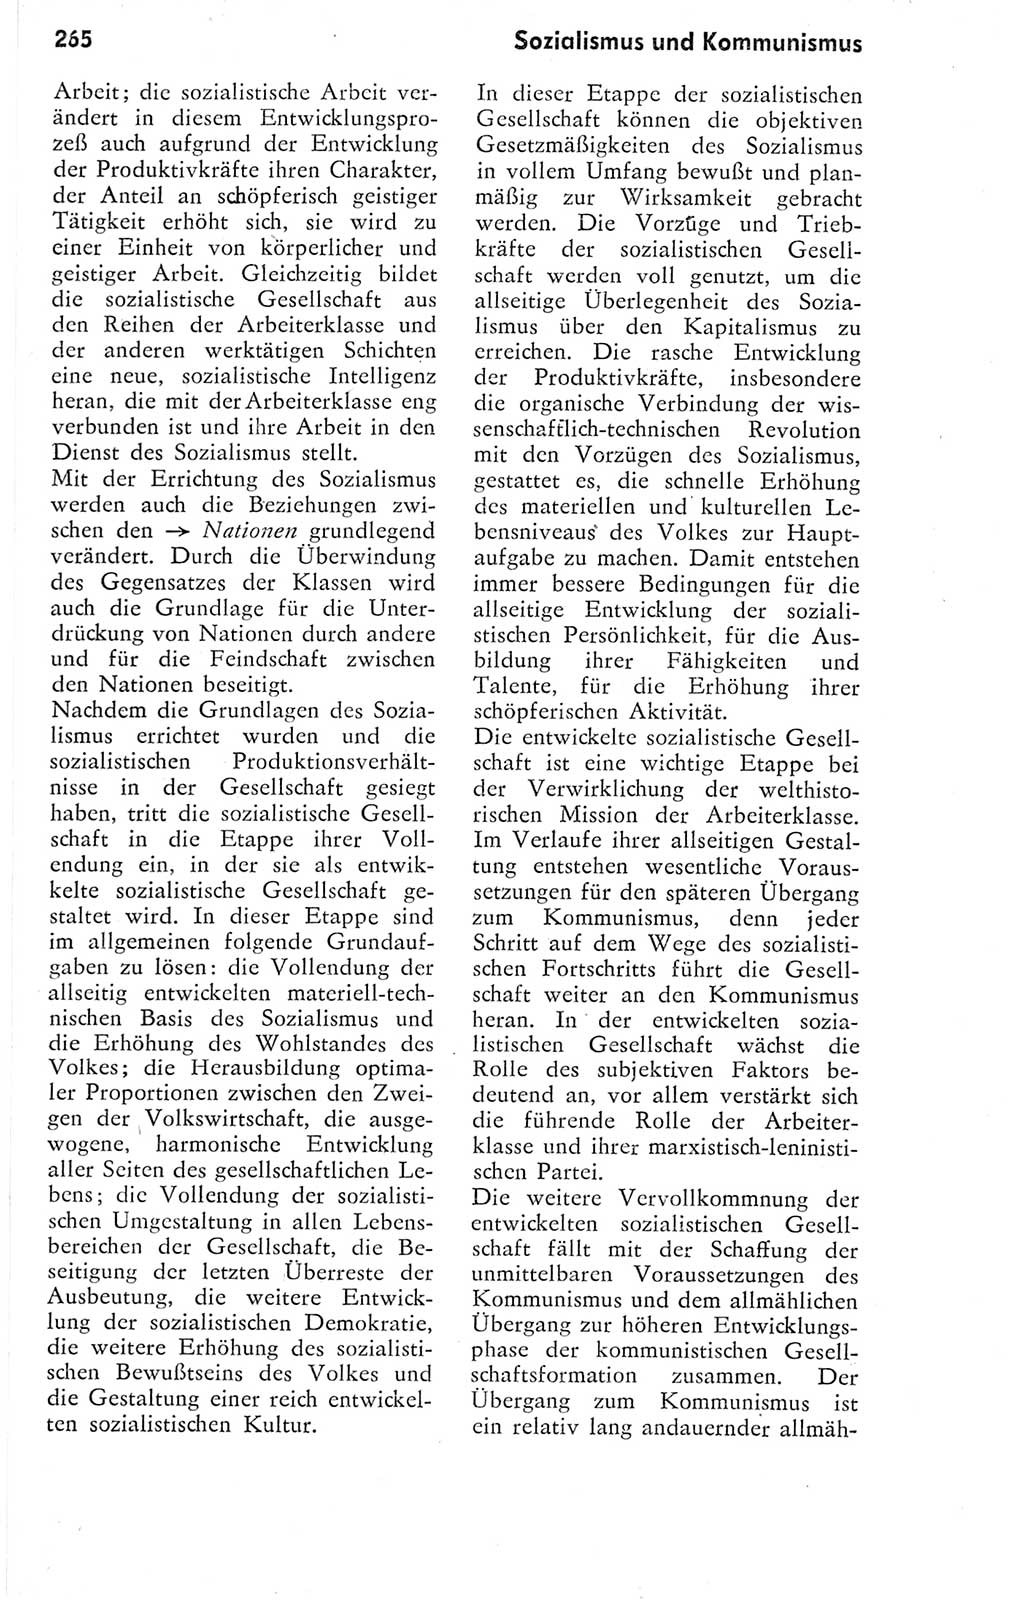 Kleines Wörterbuch der marxistisch-leninistischen Philosophie [Deutsche Demokratische Republik (DDR)] 1974, Seite 265 (Kl. Wb. ML Phil. DDR 1974, S. 265)